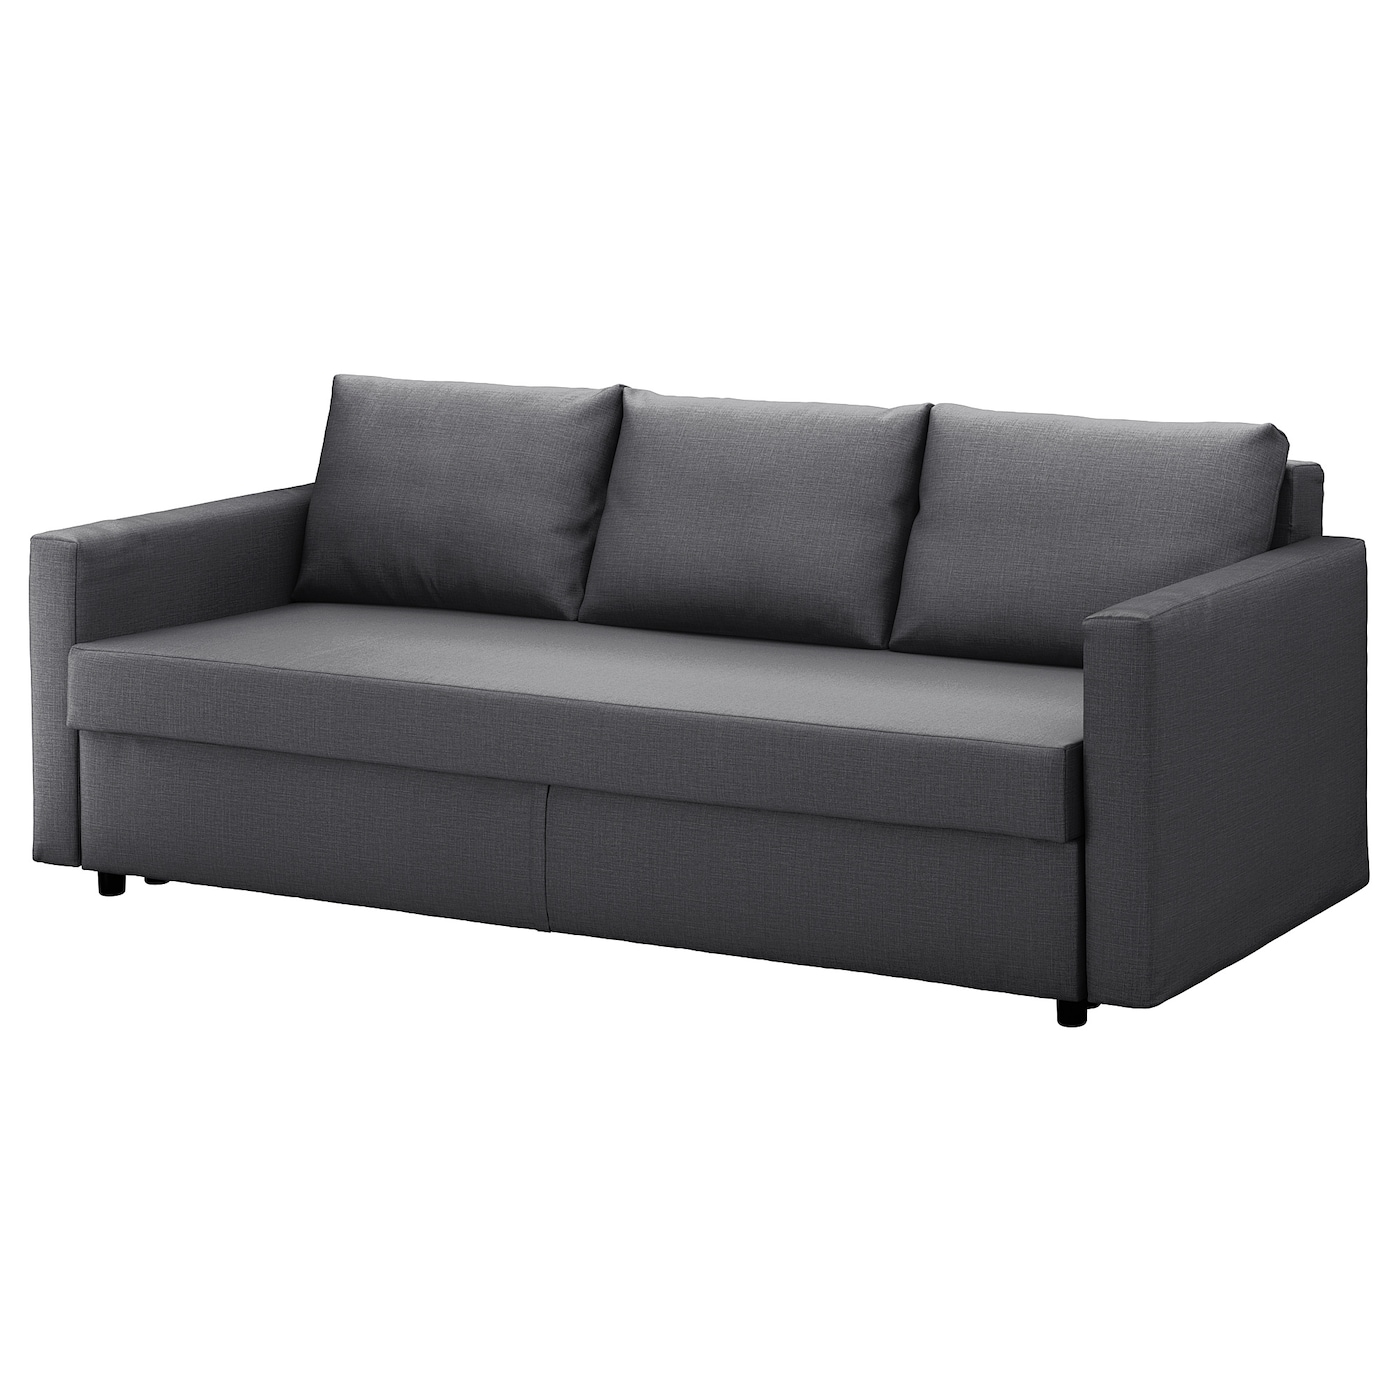 ФРИХЕТЕН 3 дивана-кровати с откидной спинкой, Скифтебо темно-серый FRIHETEN IKEA